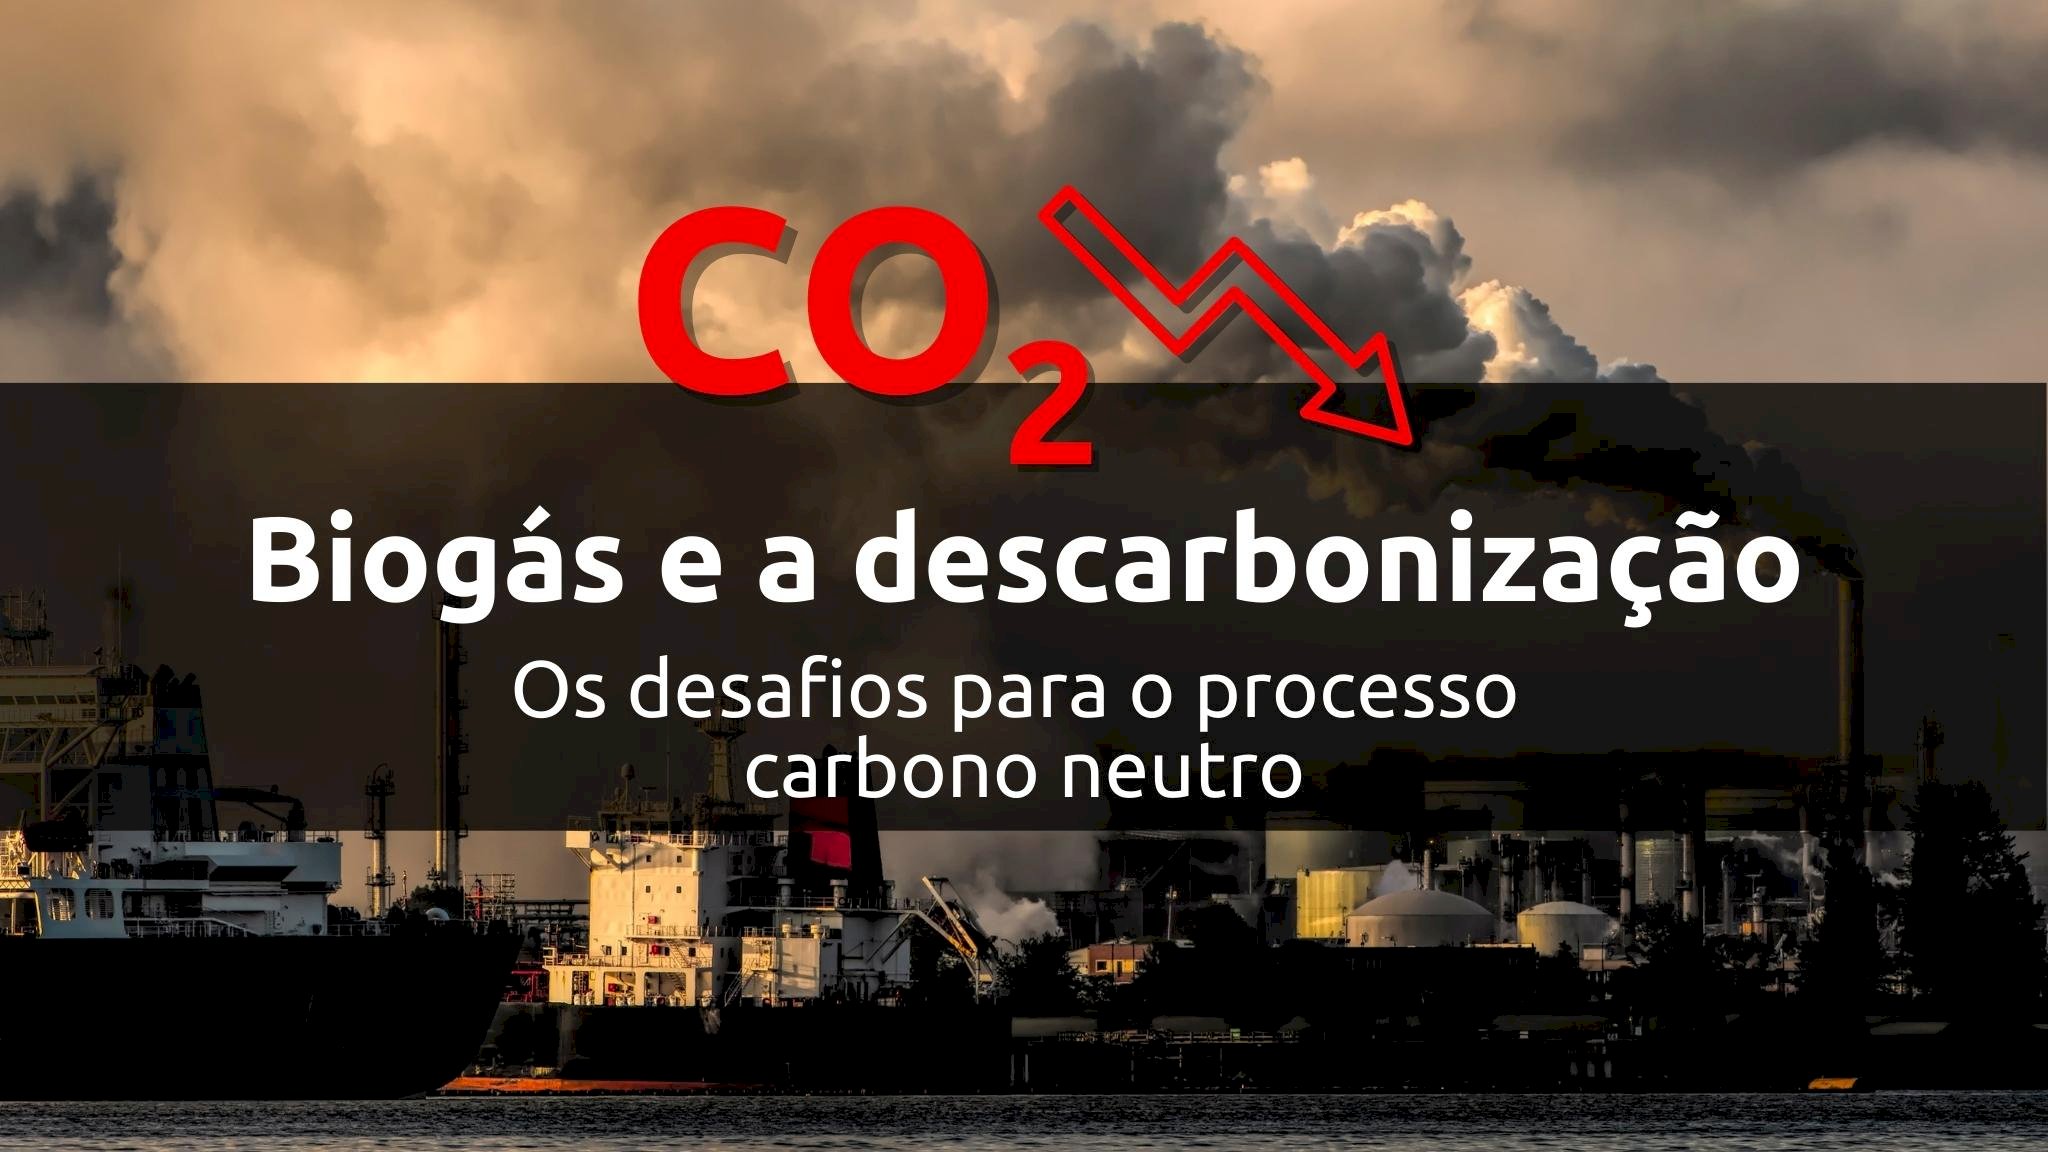 O biogás e a descarbonização